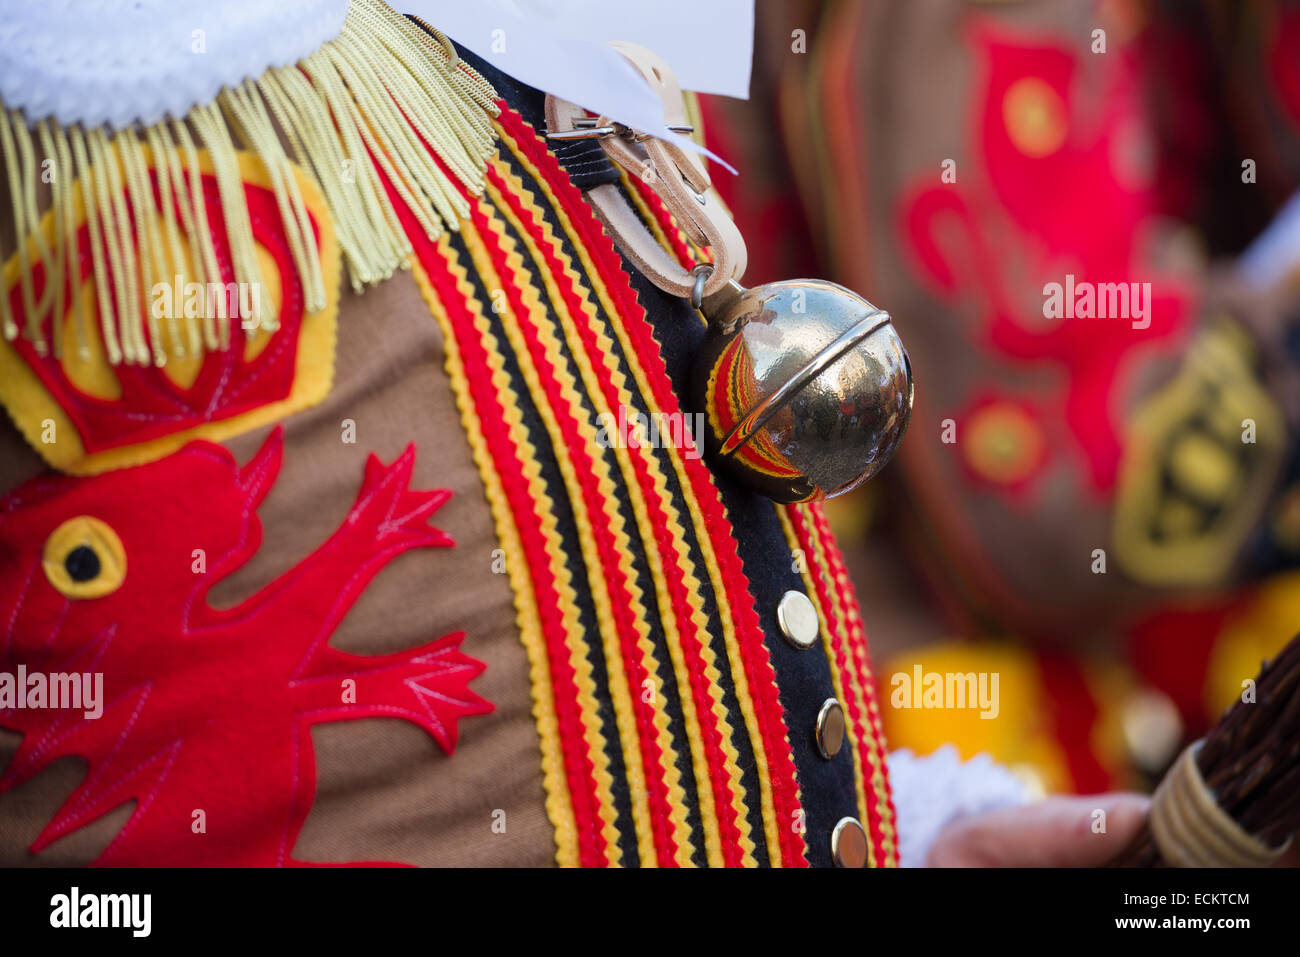 Détail d'une cloche, une partie du costume de carnaval d'un Gille, personnages traditionnels du carnaval de Binche, Binche, Belgique Banque D'Images